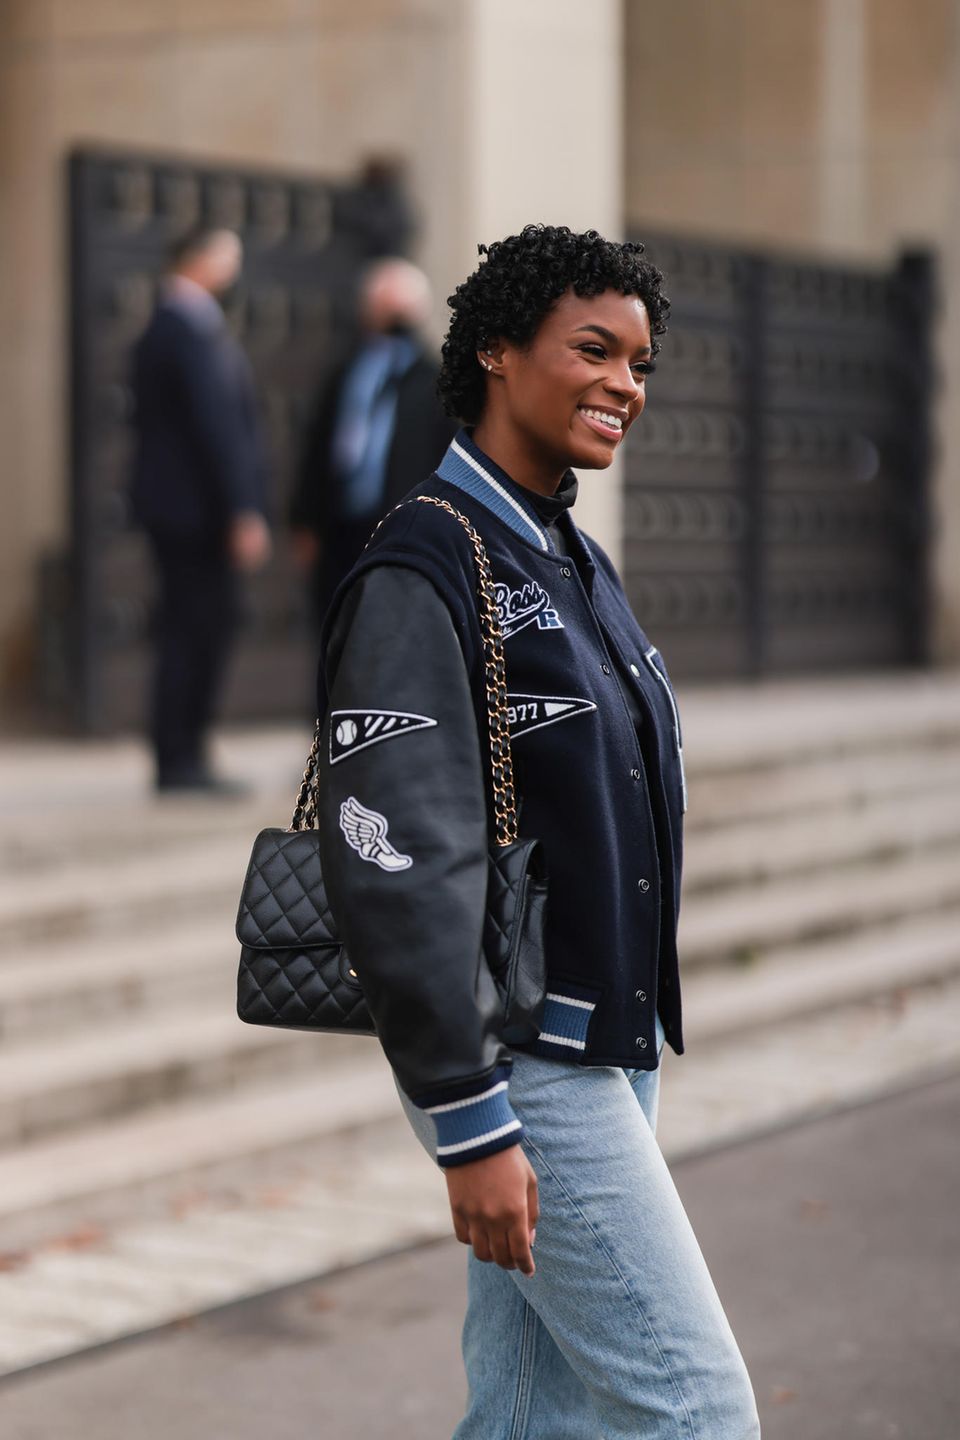 College Jacken aus den 90er Jahren feiern ihr Comeback: Frau in schwarzer College Jacke